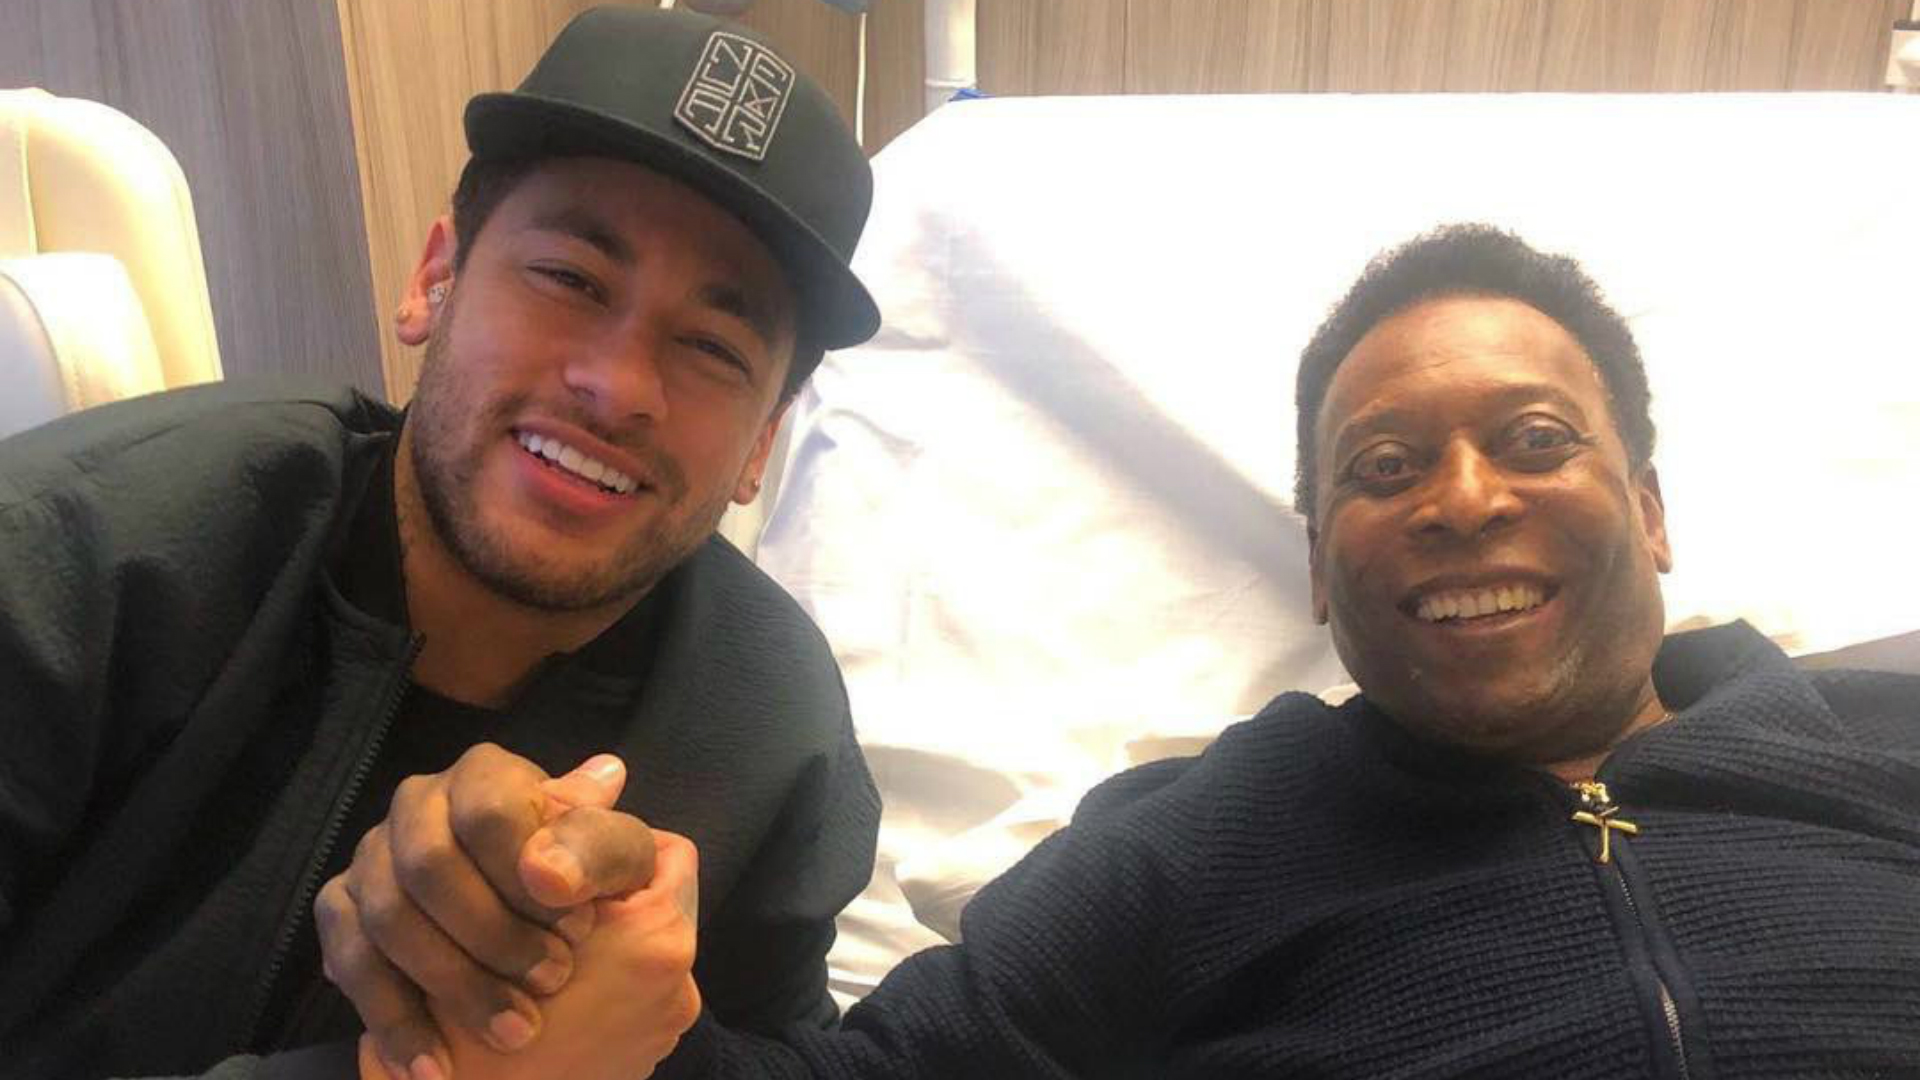 Neymar y Mbappé despidieron a O Rei: “Transformó el fútbol en arte